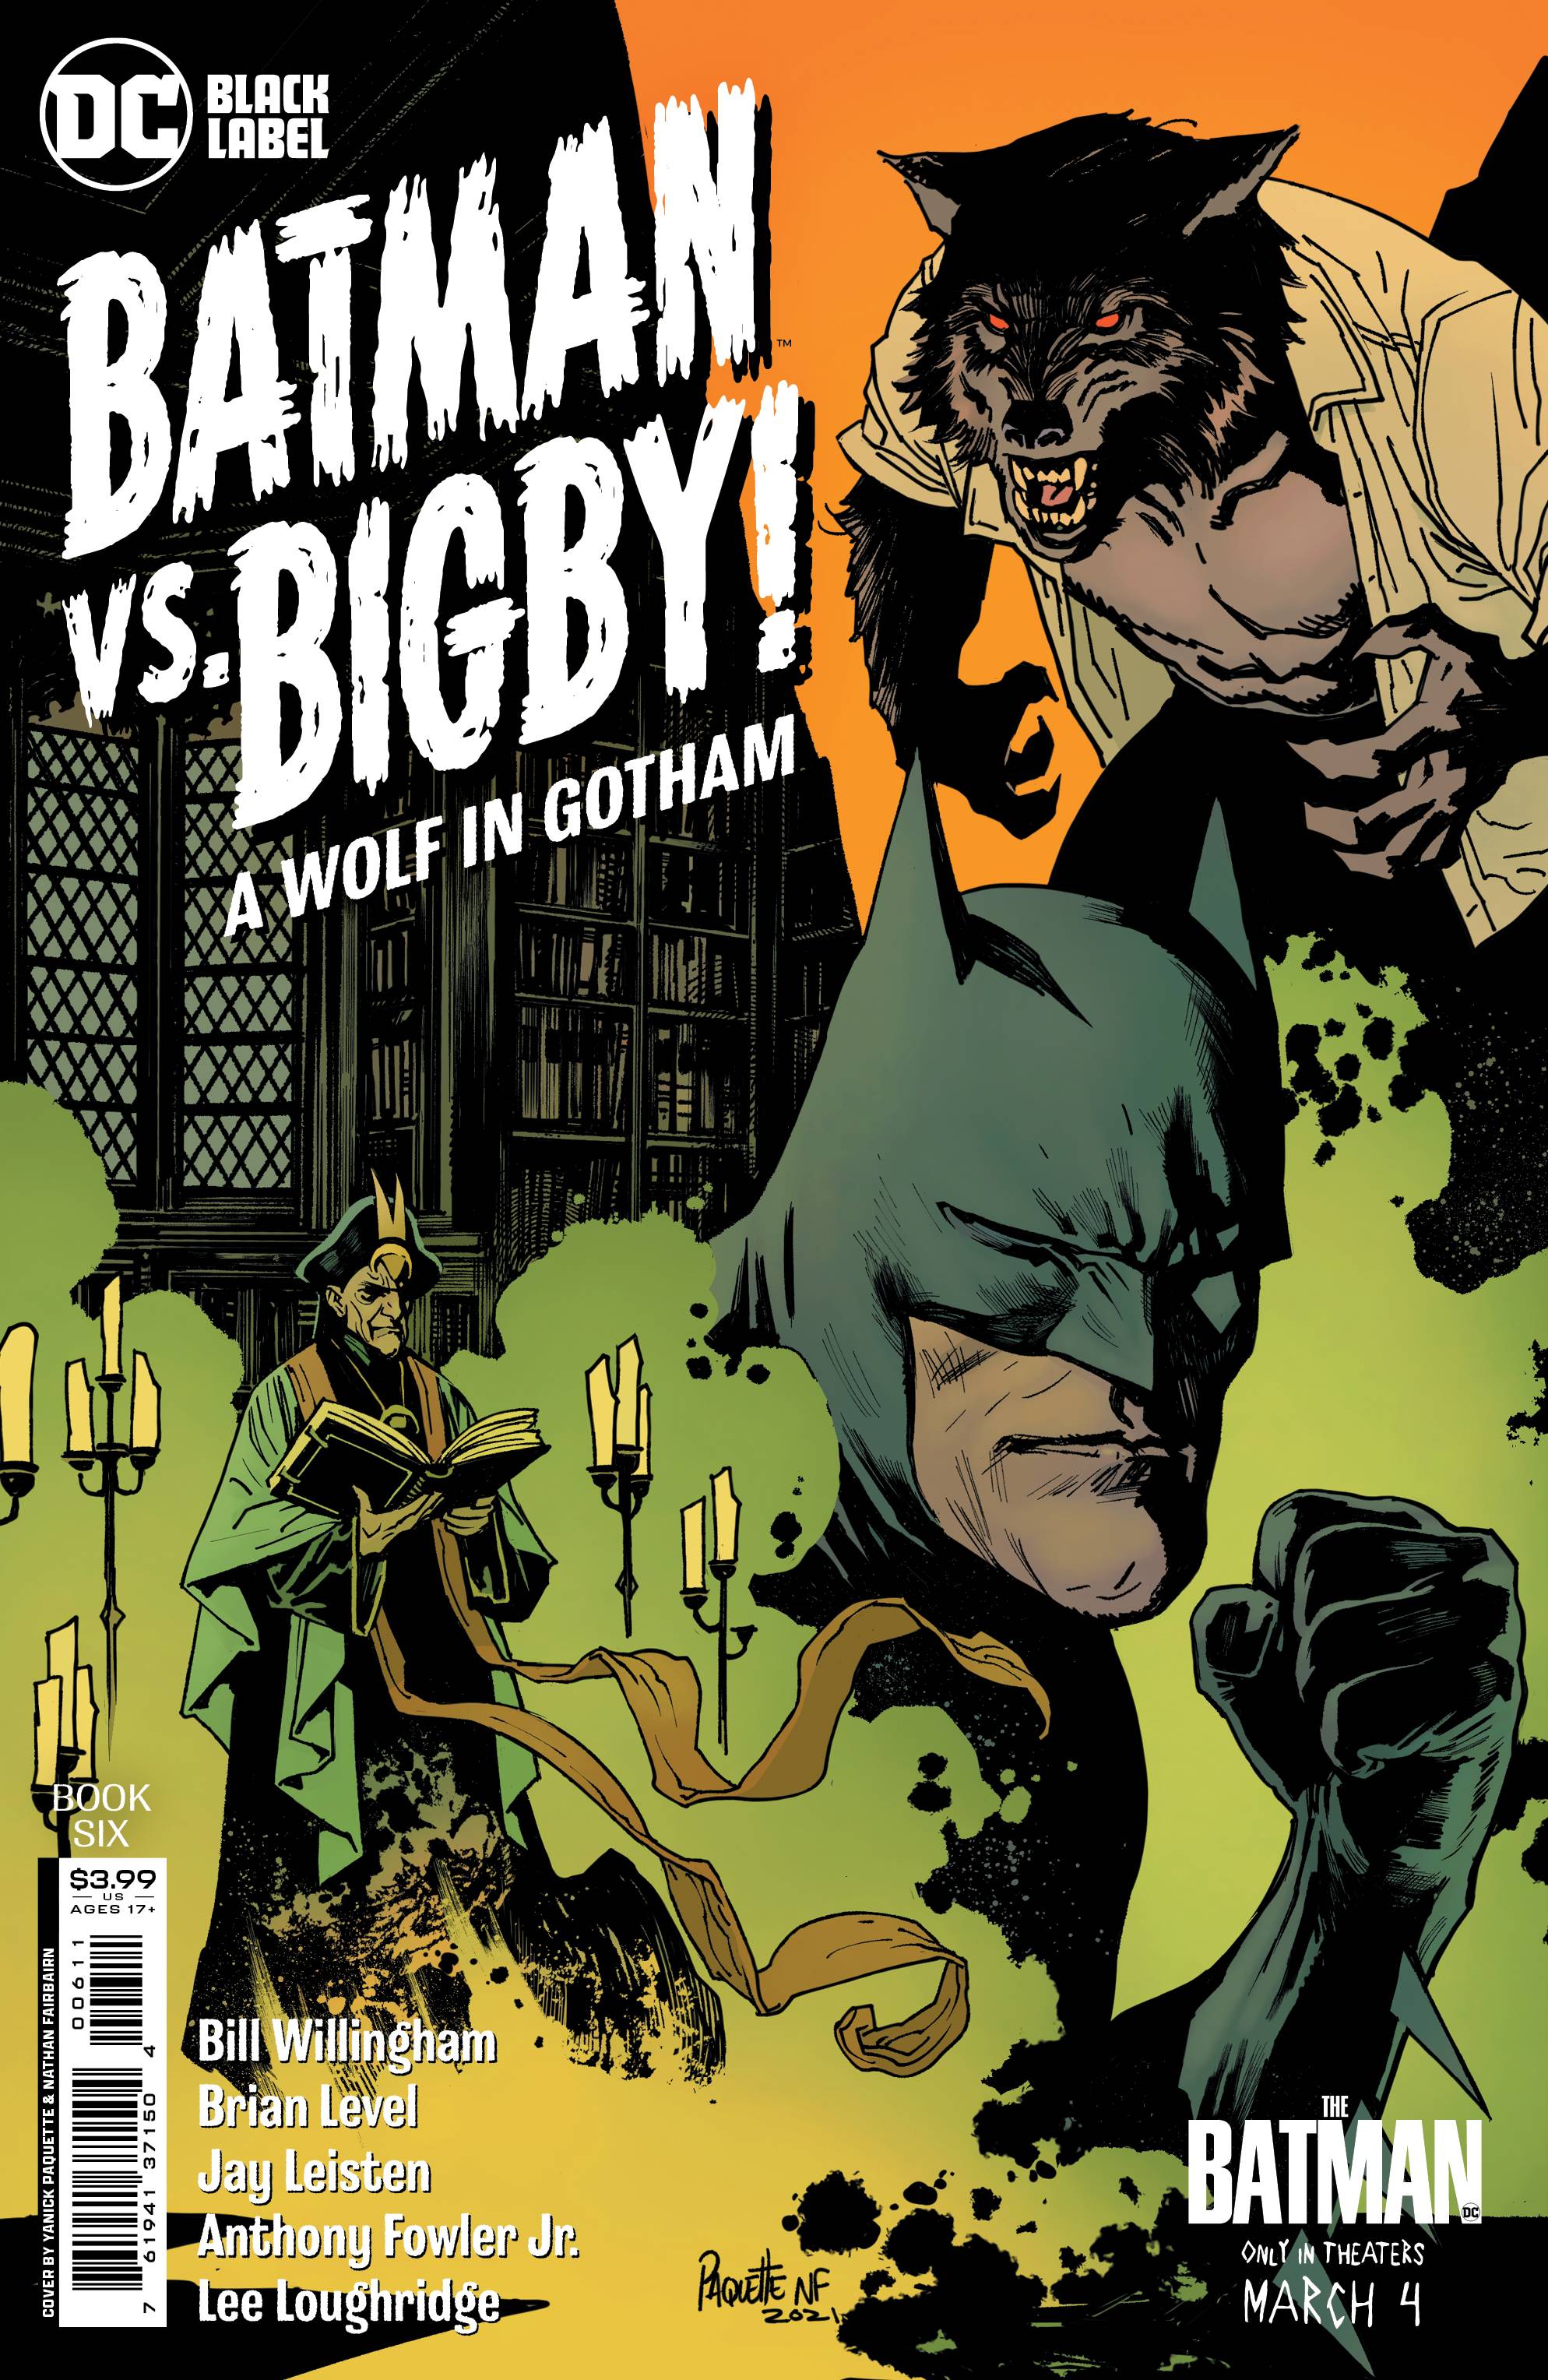 BATMAN VS BIGBY A WOLF IN GOTHAM #3 #6 (OF 6) CVR A PAQUETTE